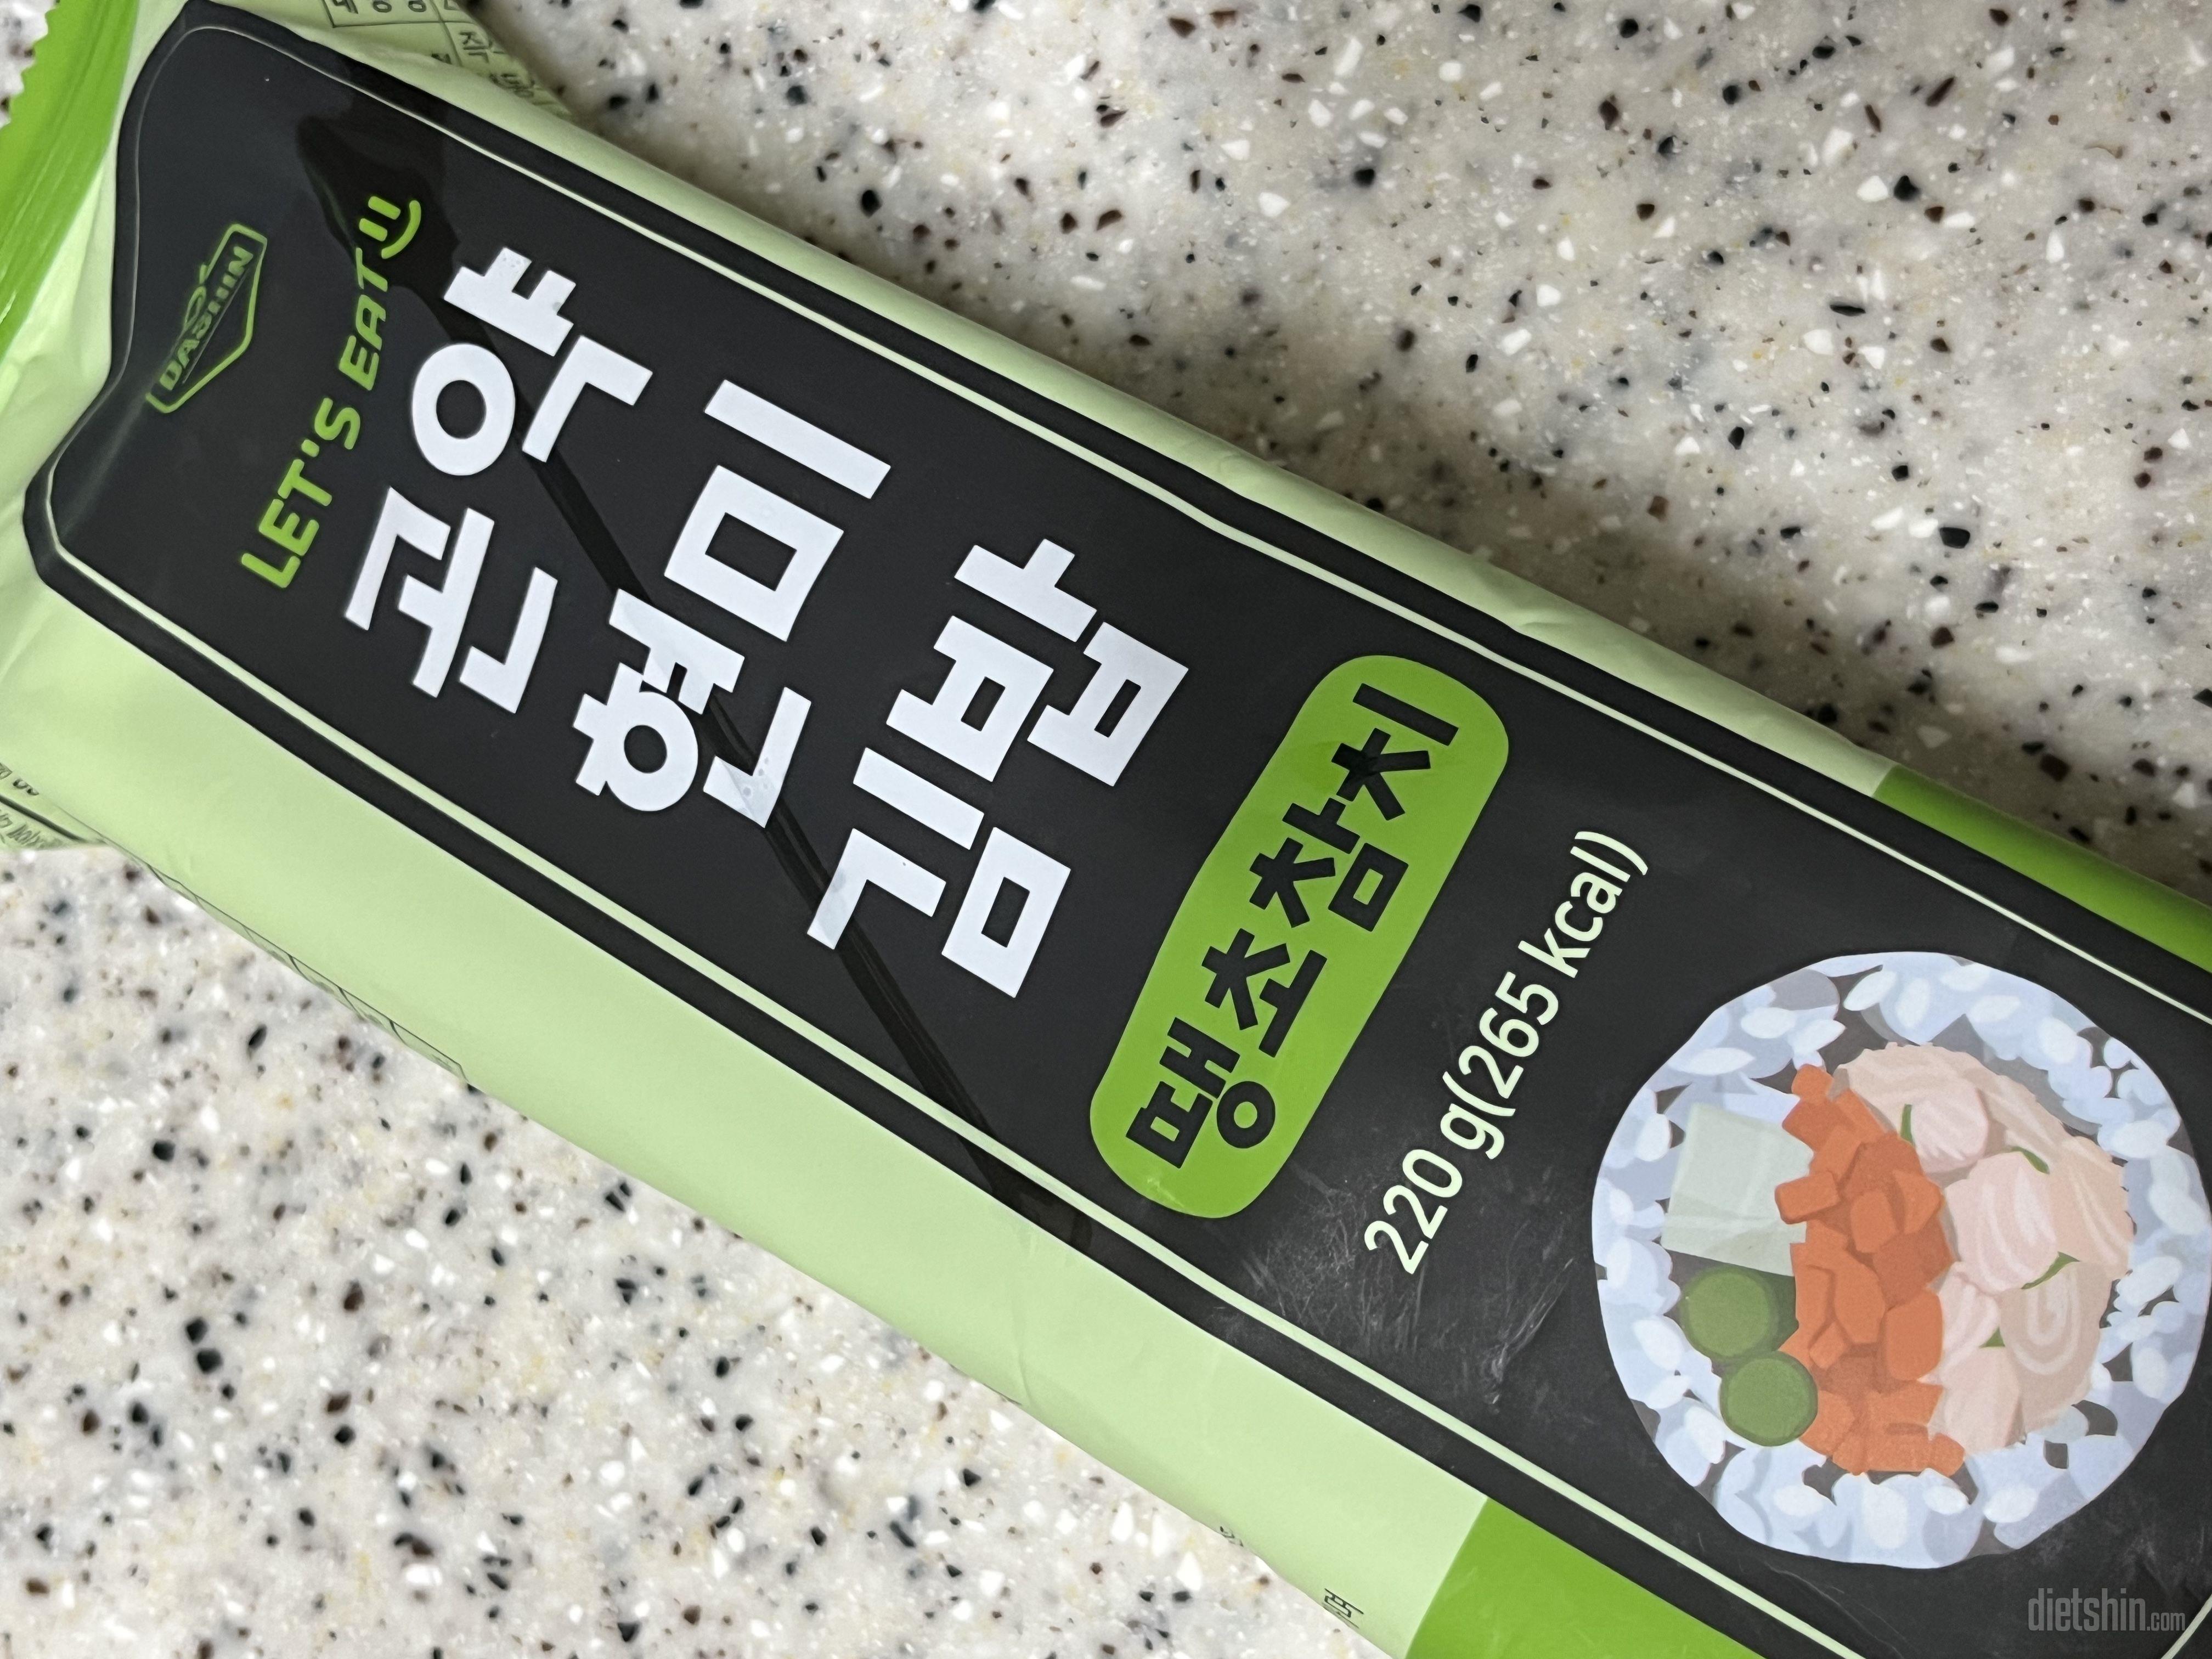 현미곤약김밥 처음먹어보는데
김밥이랑